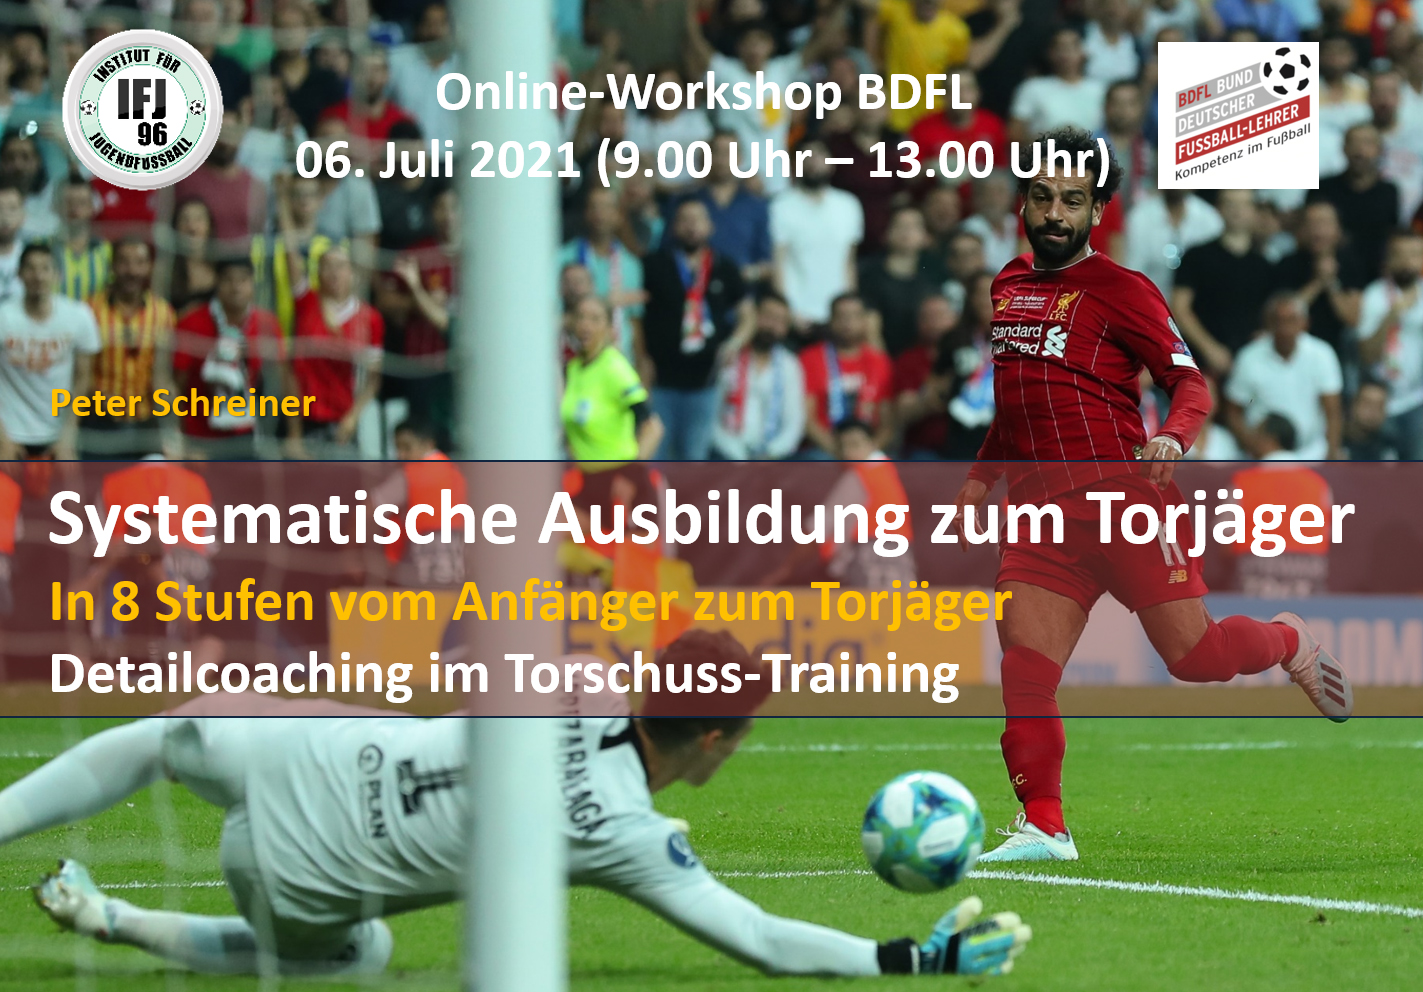 Systematische Ausbildung zum Torjäger im Fußball – BDFL Seminar mit Peter Schreiner